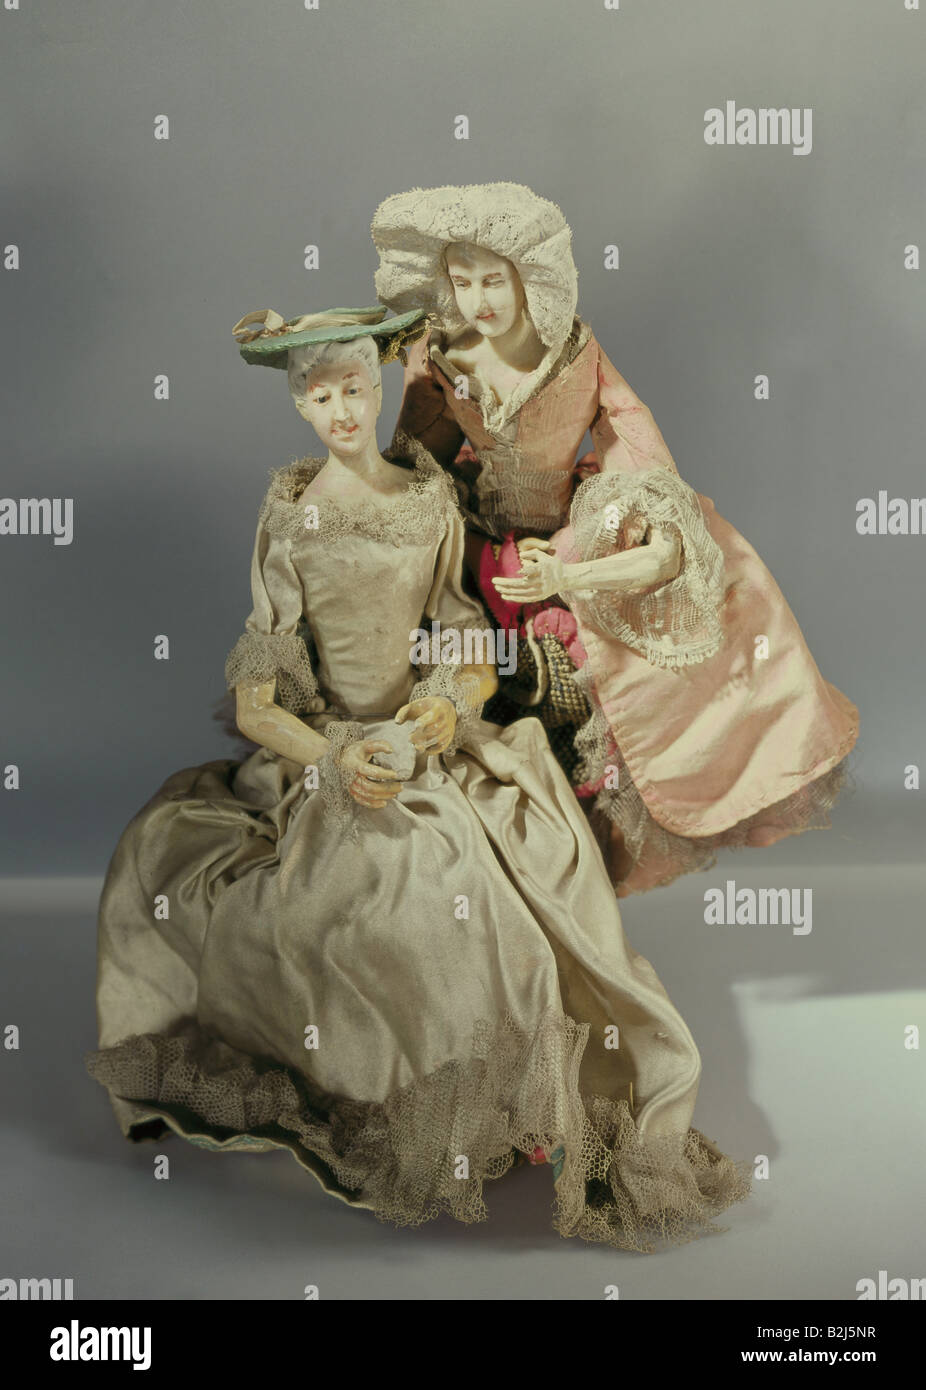 Spielzeug, Puppen, "zwei modisch gekleidete Damen", Holz, Kopfwachsen, Kleider, Deutschland, Ende 18. Jahrhundert, Bayerisches Nationalmuseum, München, Stockfoto